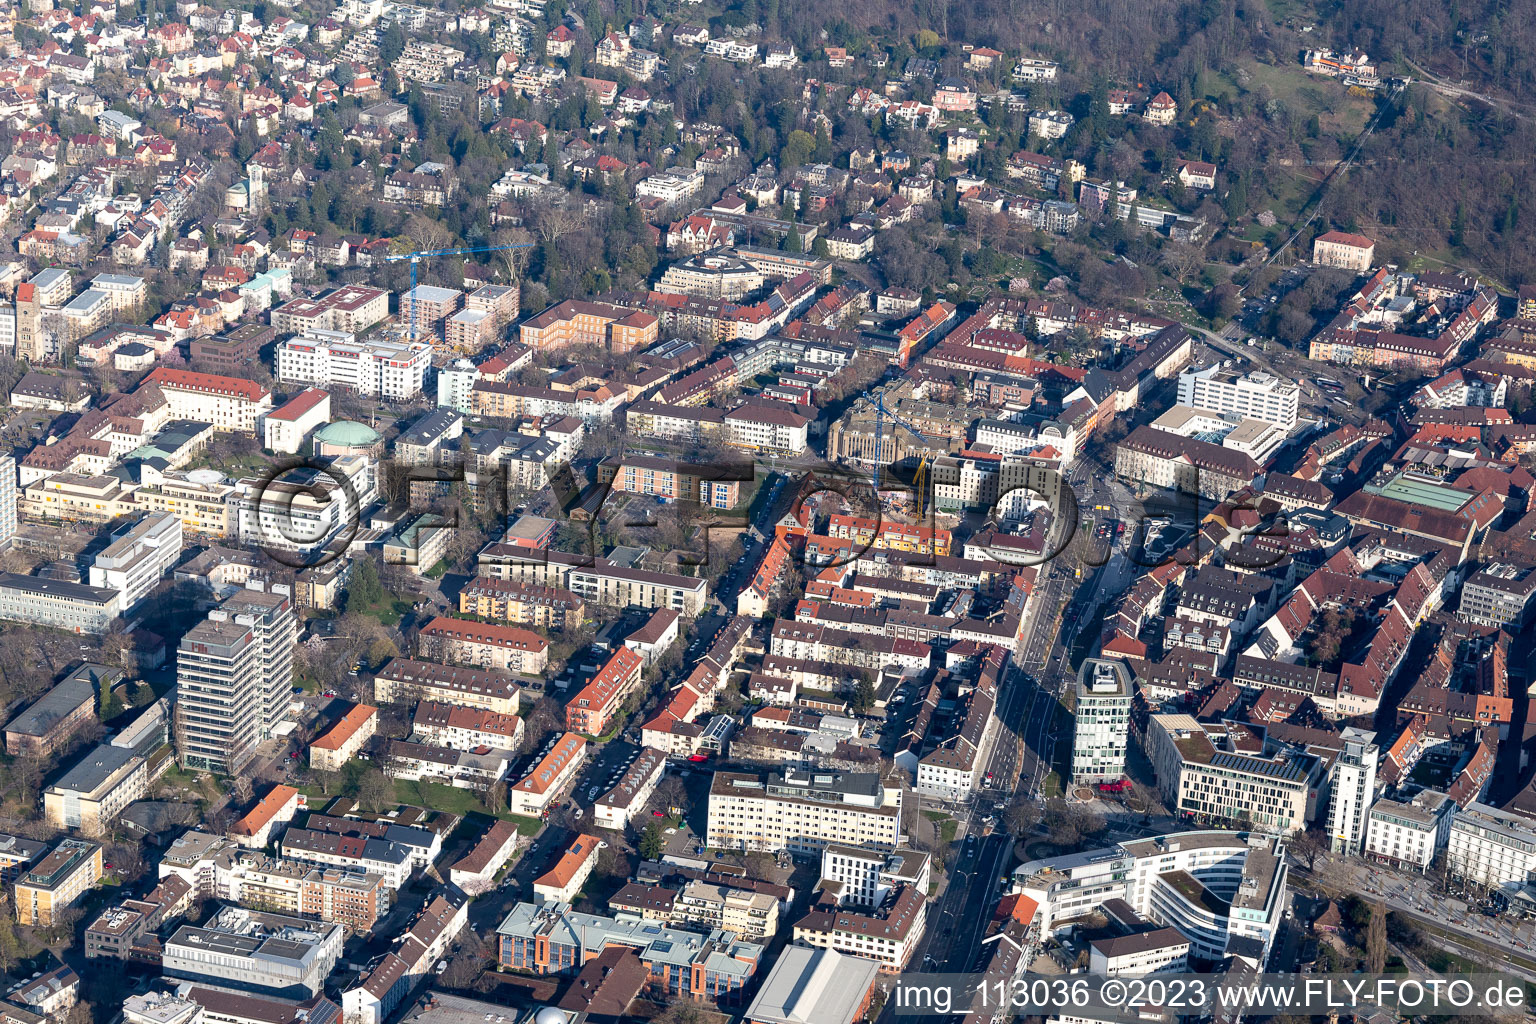 Vue aérienne de Place Fahnenberg à le quartier Neuburg in Freiburg im Breisgau dans le département Bade-Wurtemberg, Allemagne